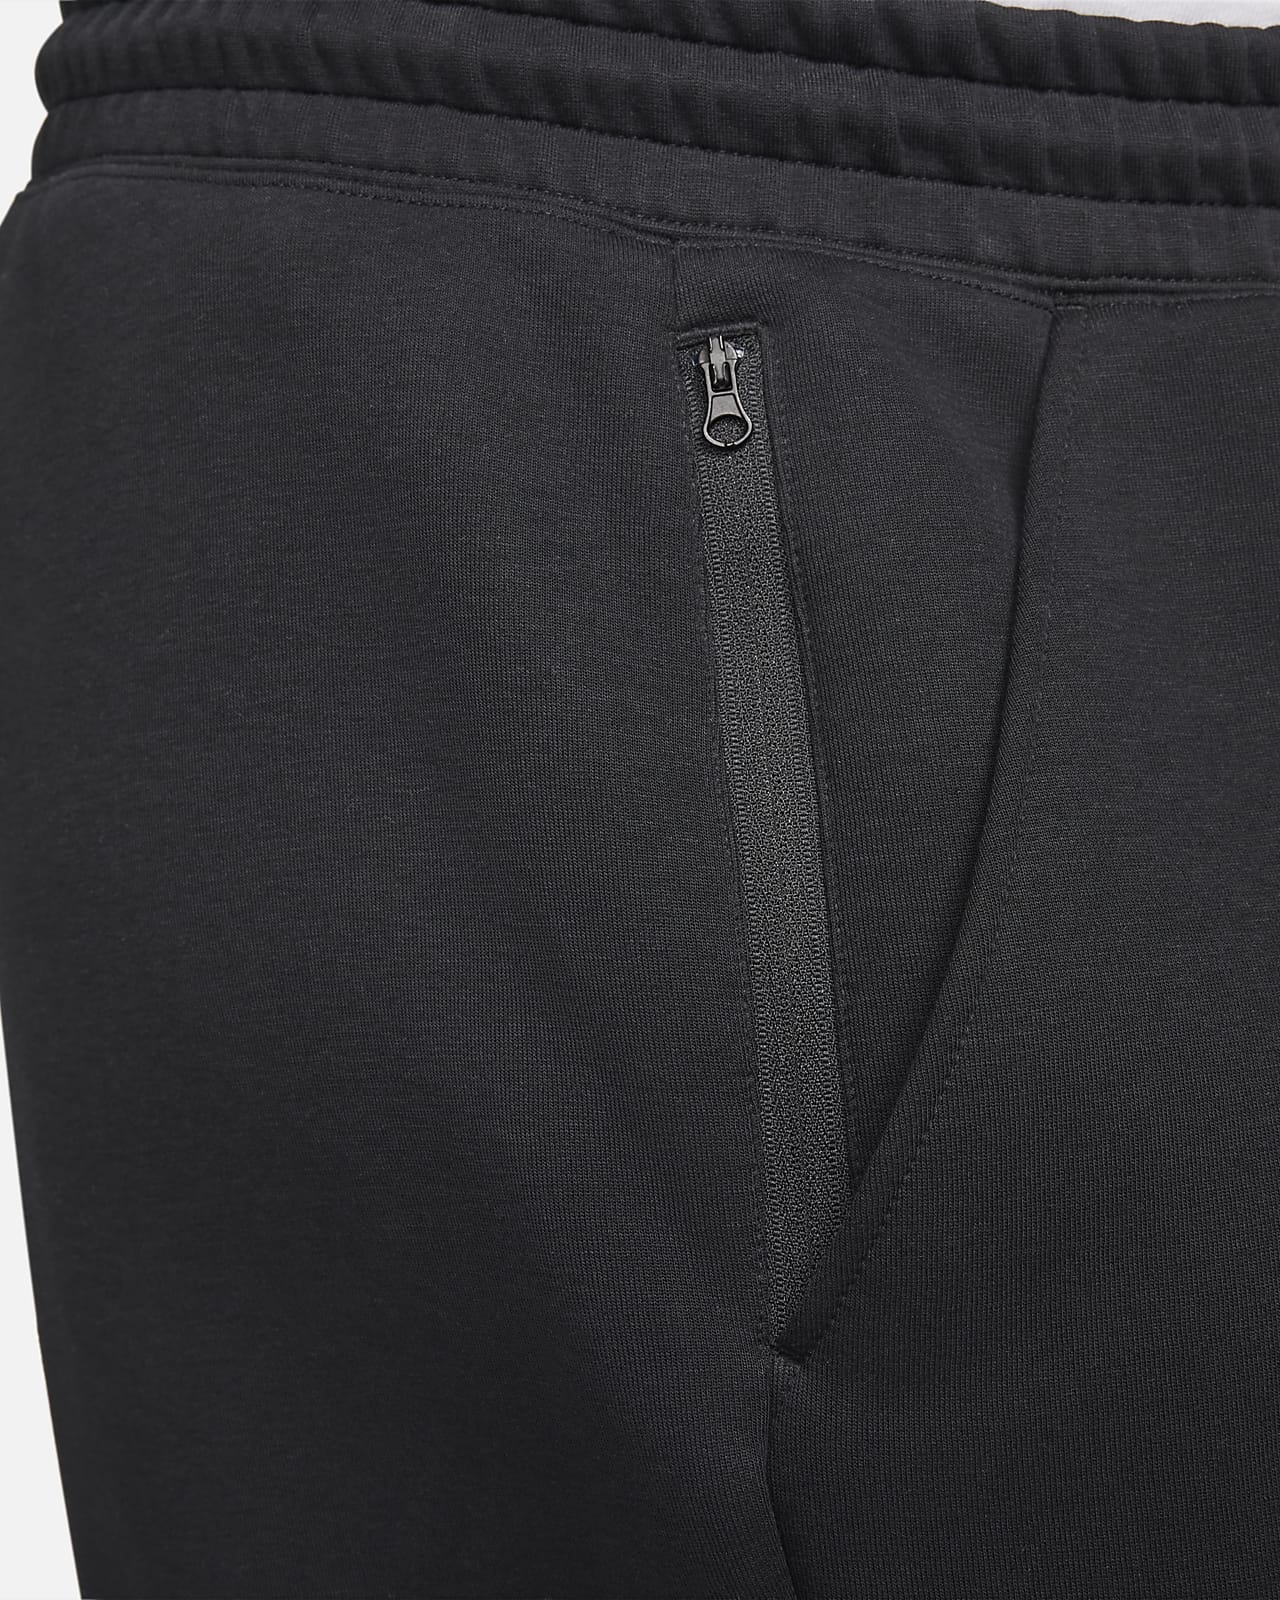 Nike Sportswear Women's Tech Fleece Pants Black / Black